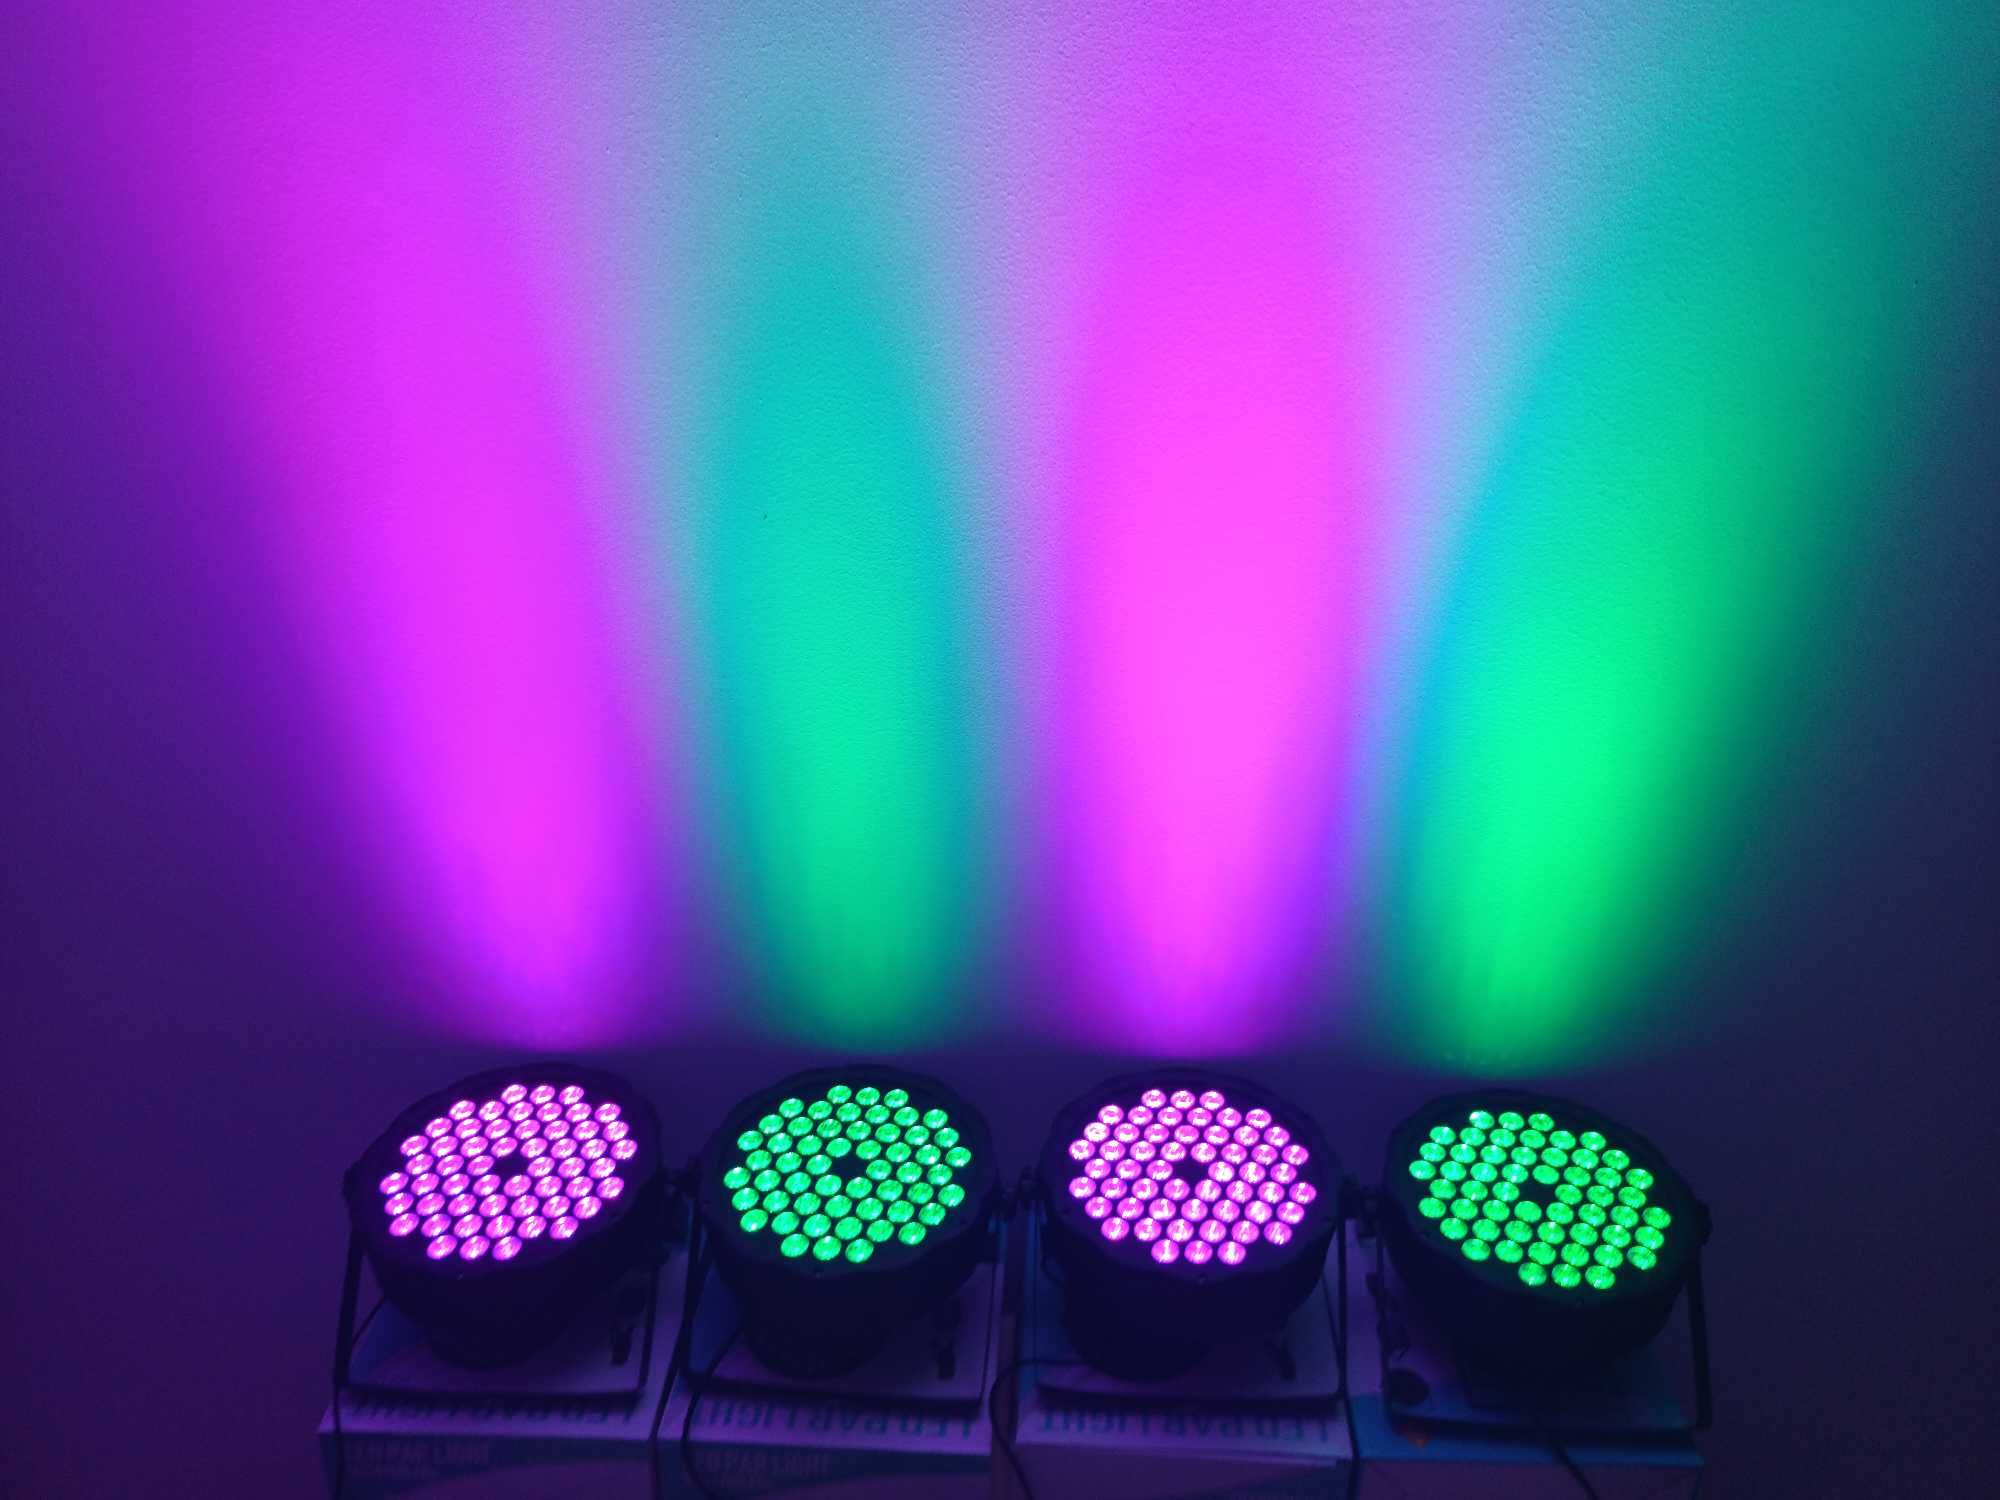 ORGA DE LUMINI 54 LED *Joc spectaculos de culori automat sau pe muzica